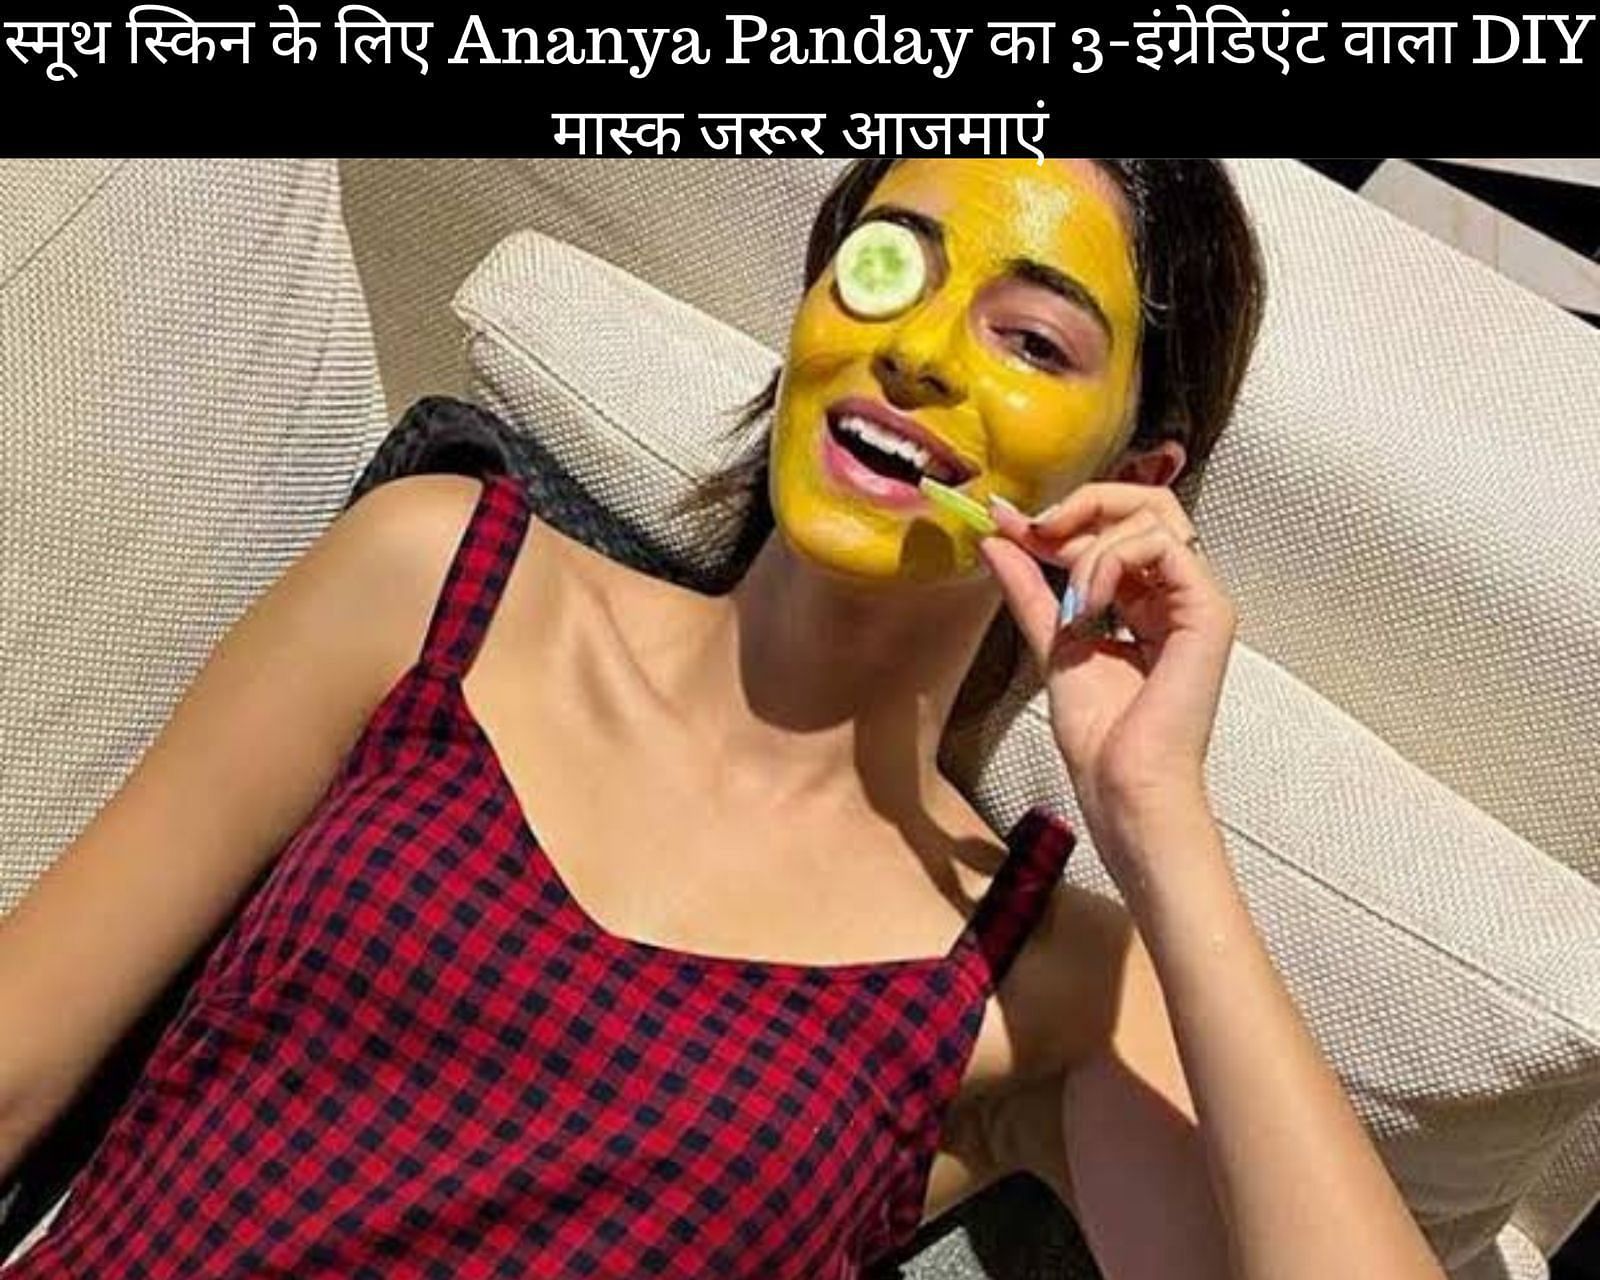 स्मूथ स्किन के लिए Ananya Panday का 3-इंग्रेडिएंट वाला DIY मास्क जरूर आजमाएं (फोटो - sportskeedaहिन्दी)